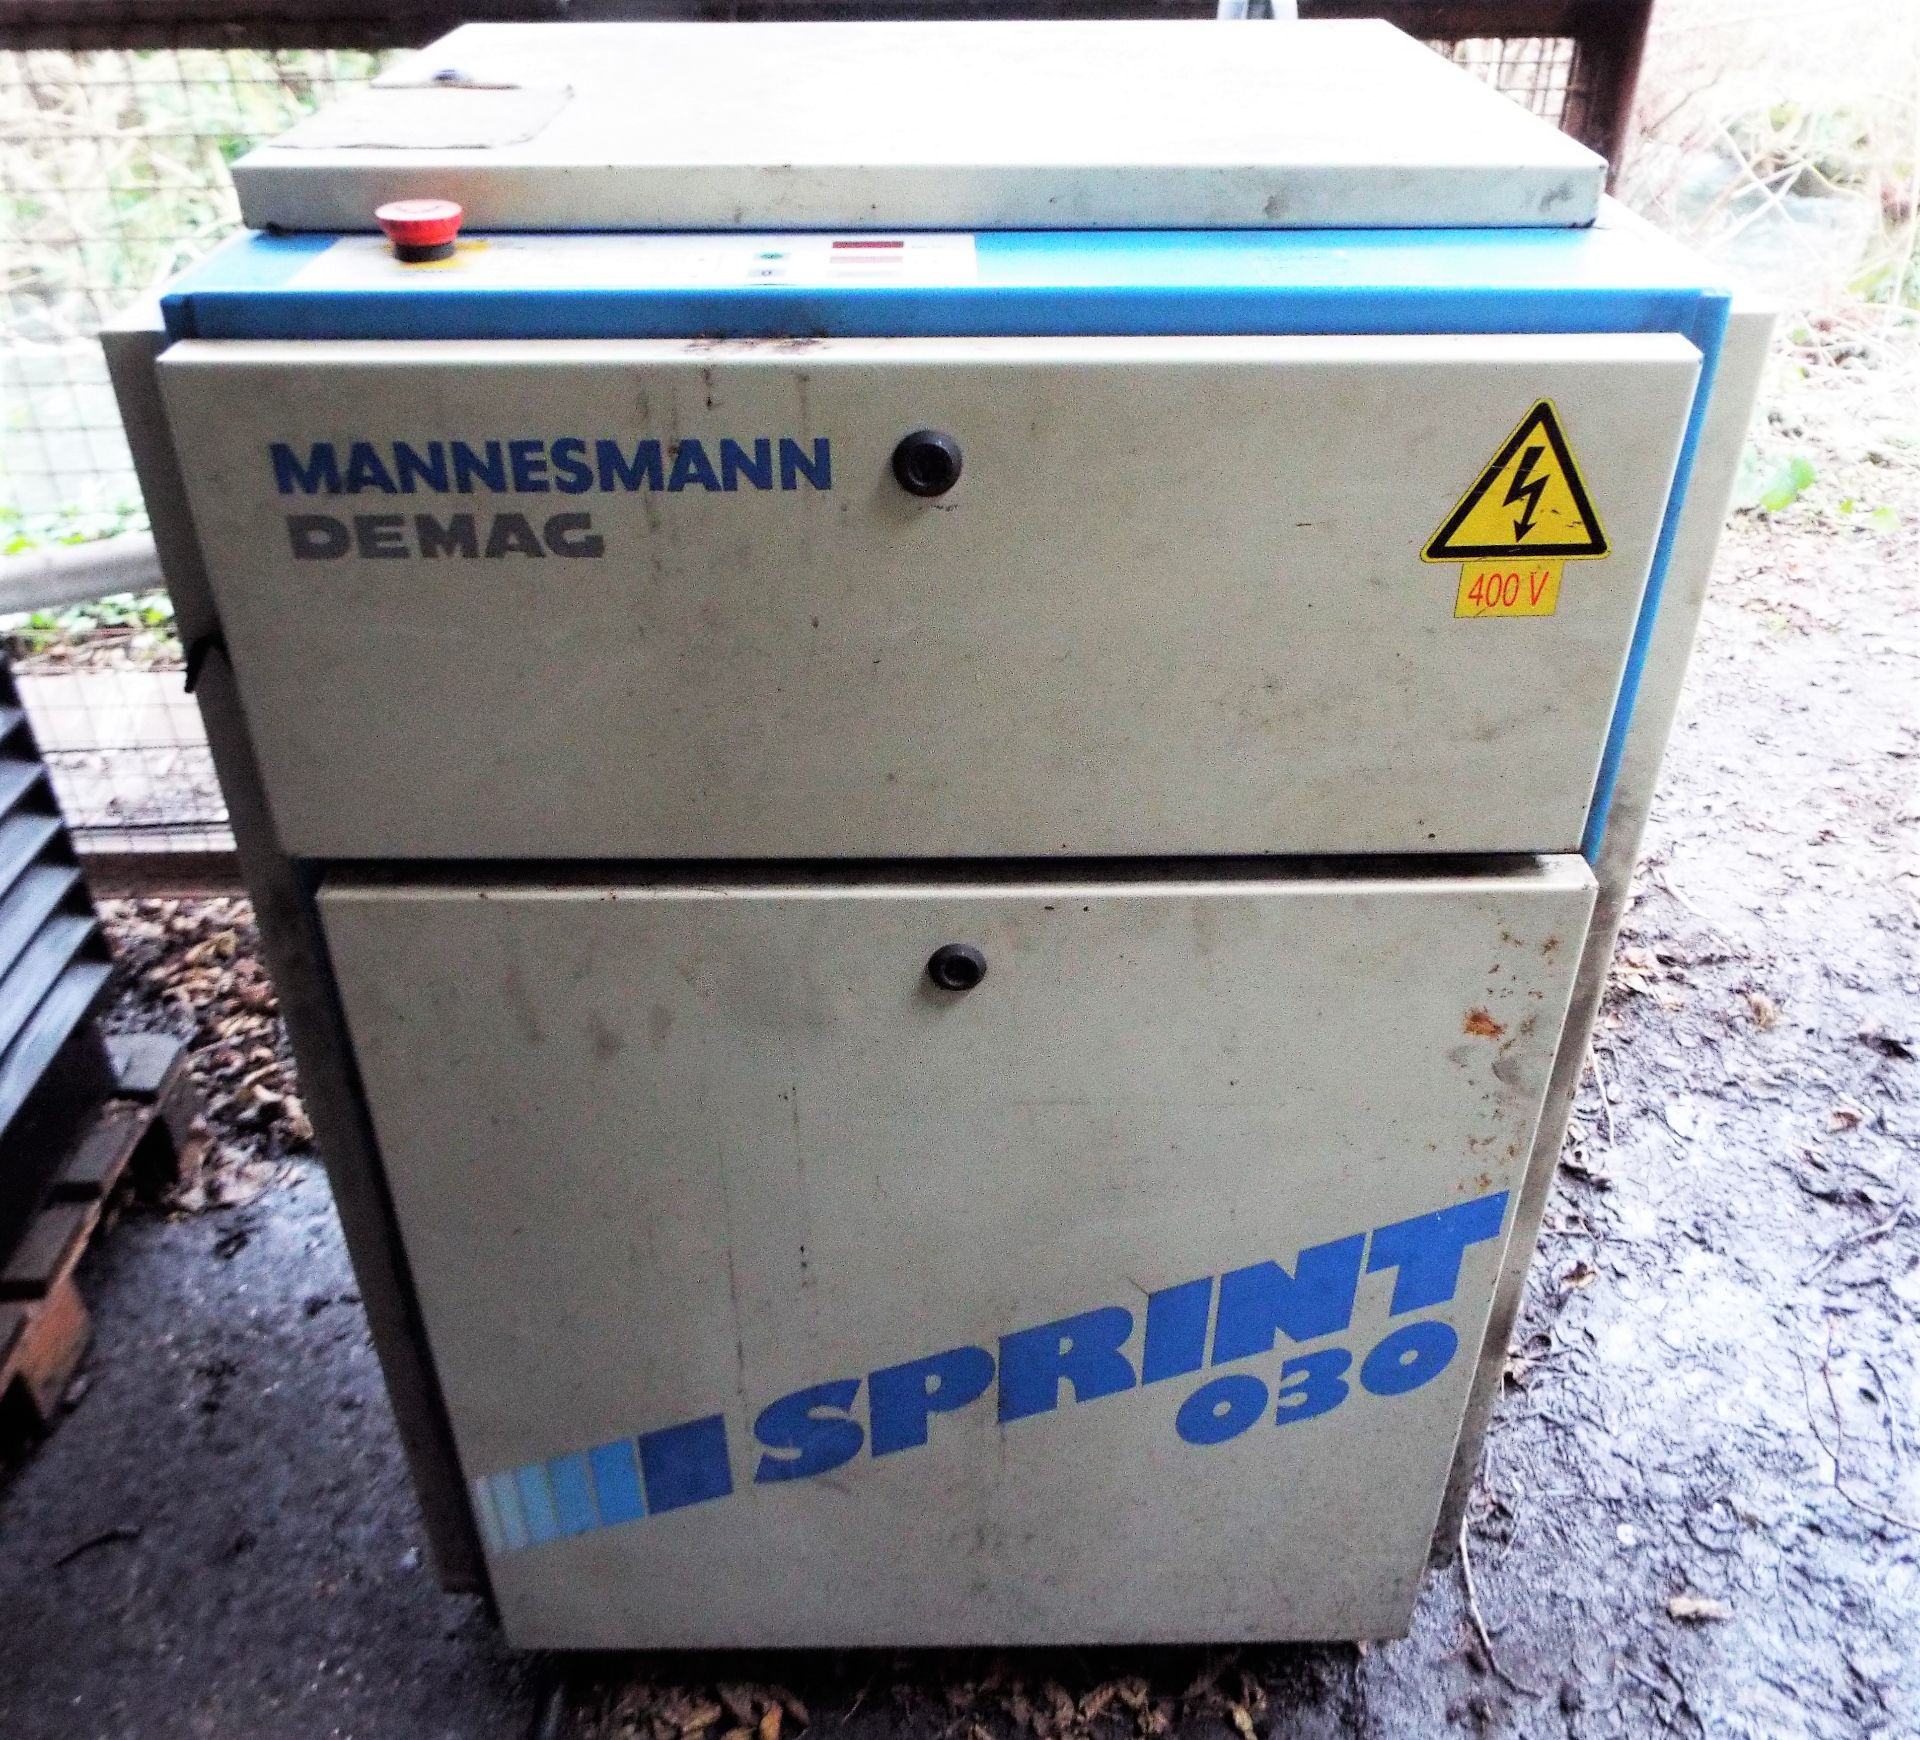 Mannesmann Demag Sprint 030 Compressor.